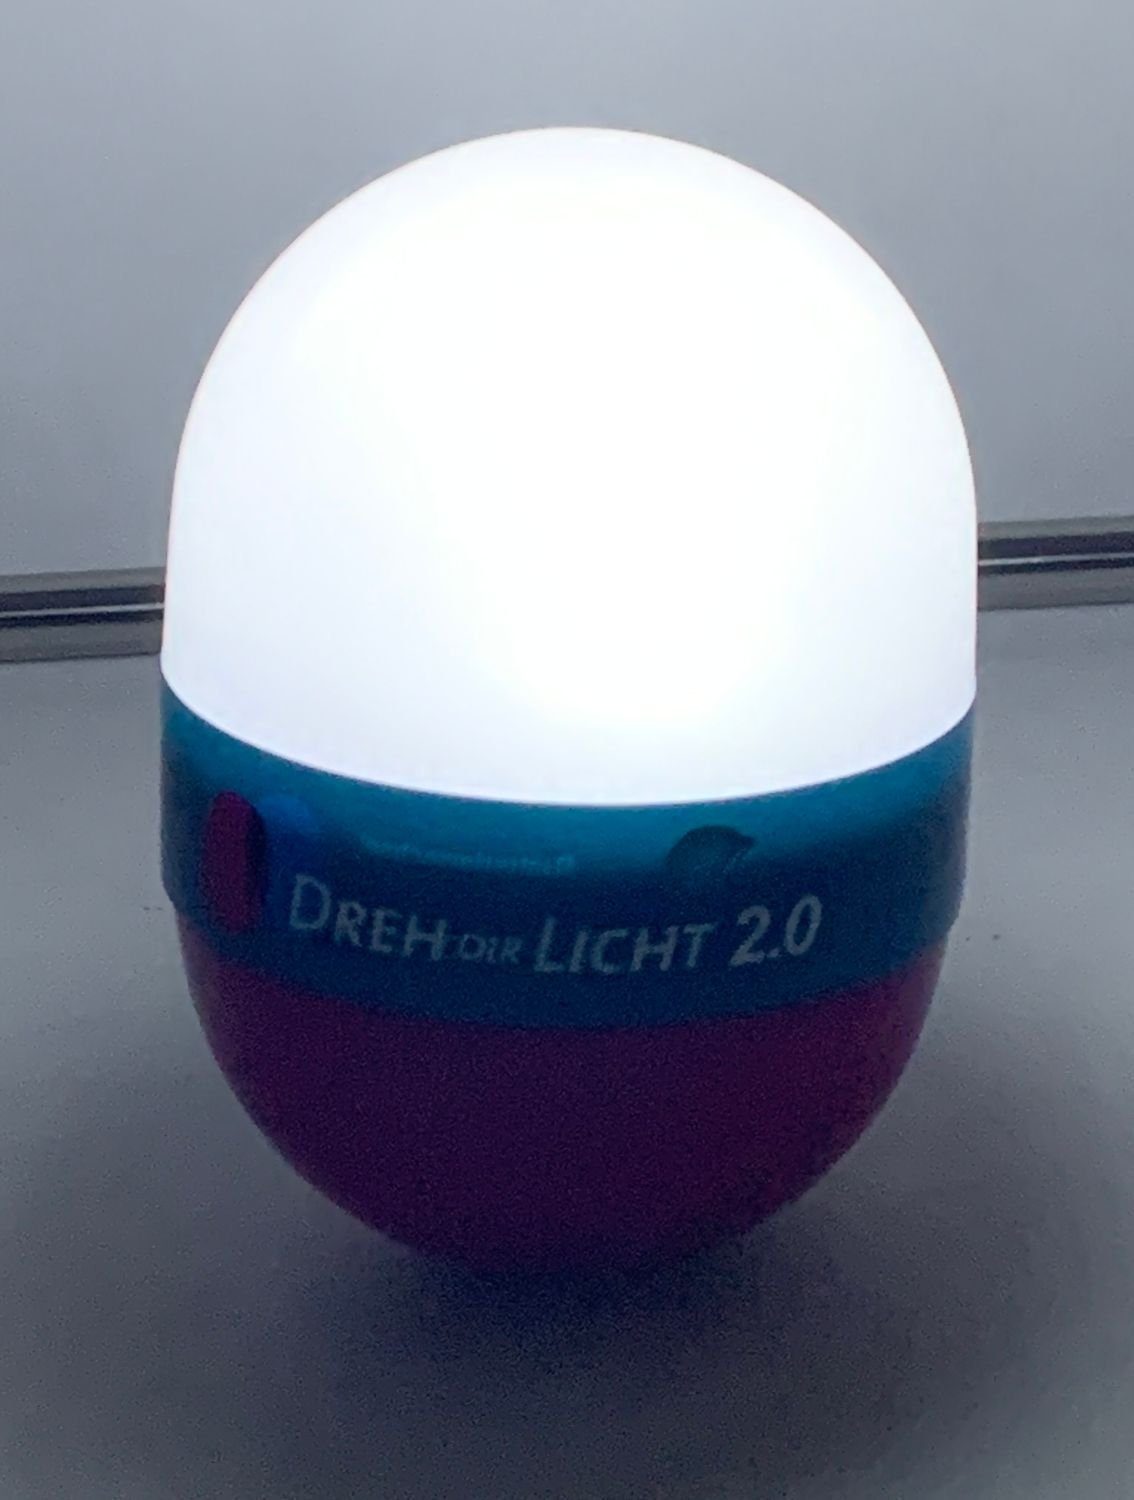 BURI LED Campinglampe Dir Leselam Dreh 2.0 12,5cm Dekolicht Nachtlicht Taschenlampe grün Licht